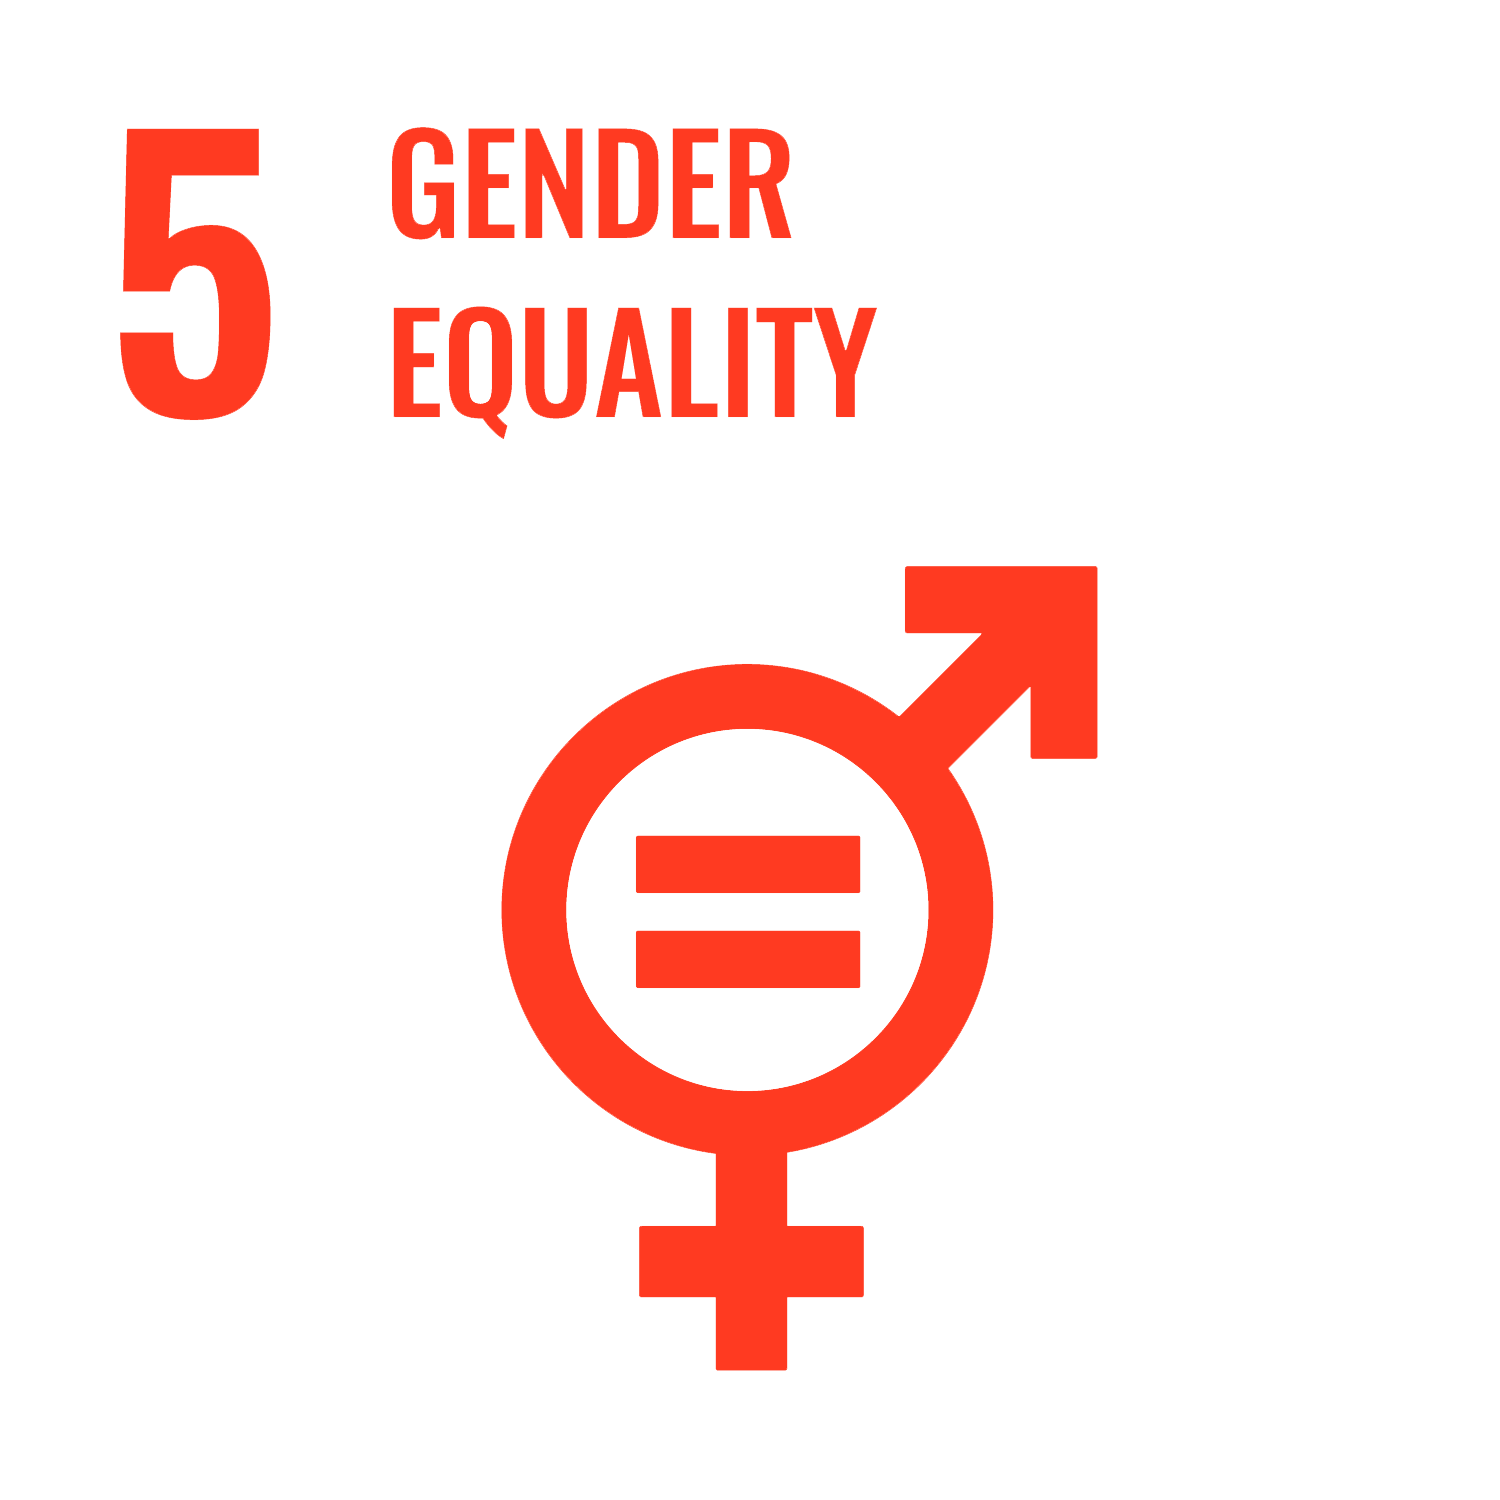 United Nations Goal #5 Gender Equality